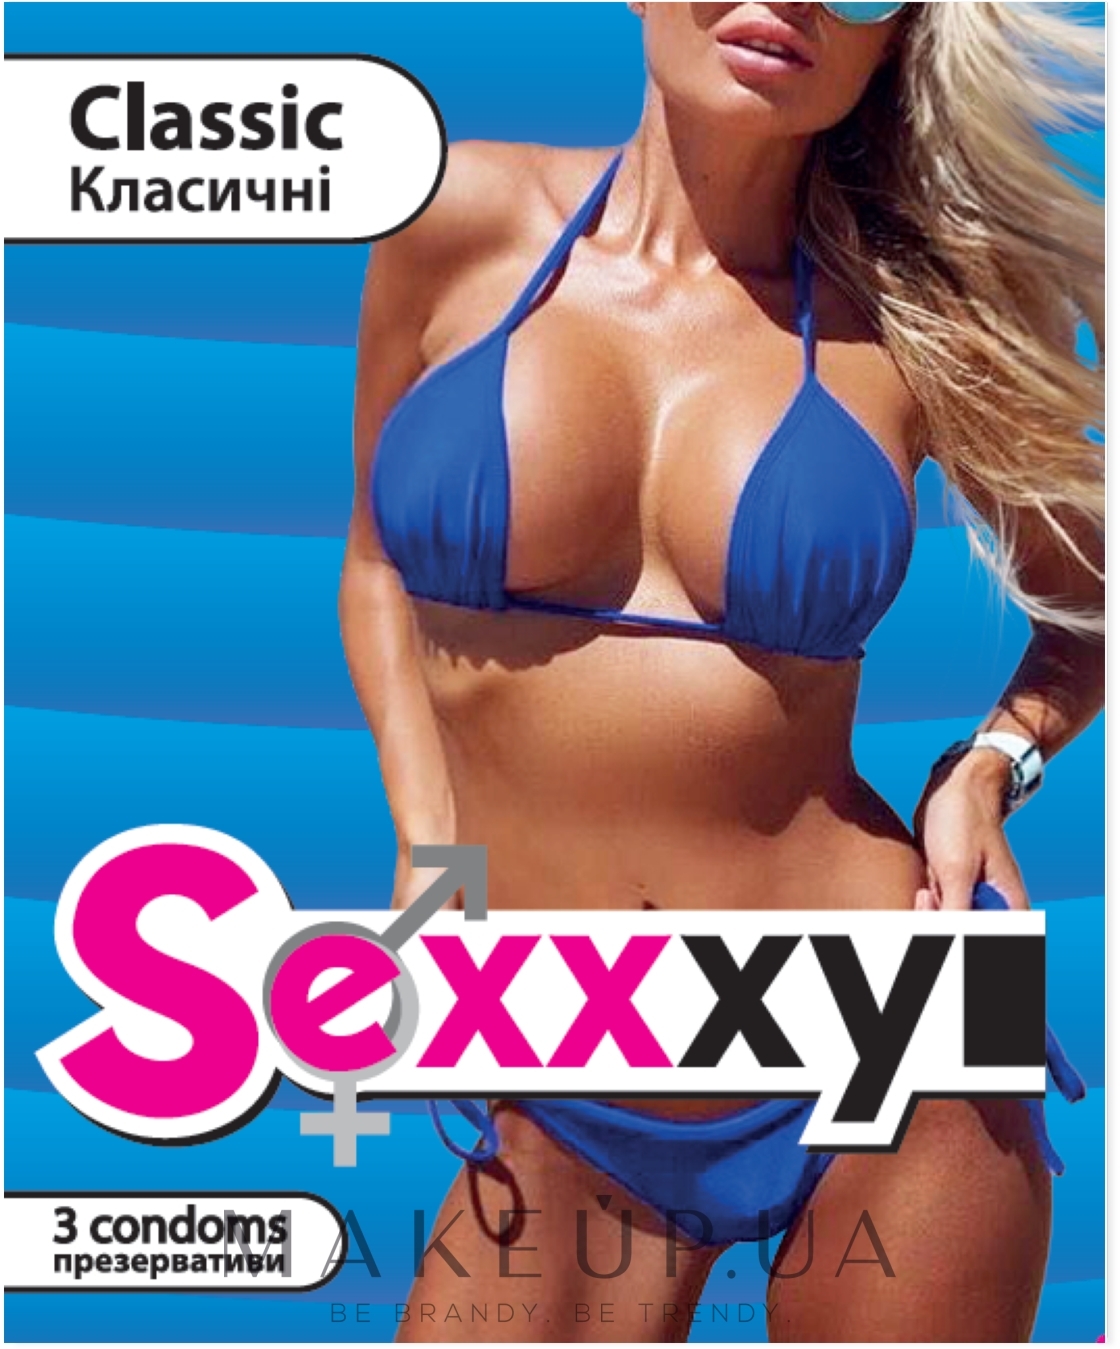 Презервативи "Classic" - Sexxxyi — фото 3шт